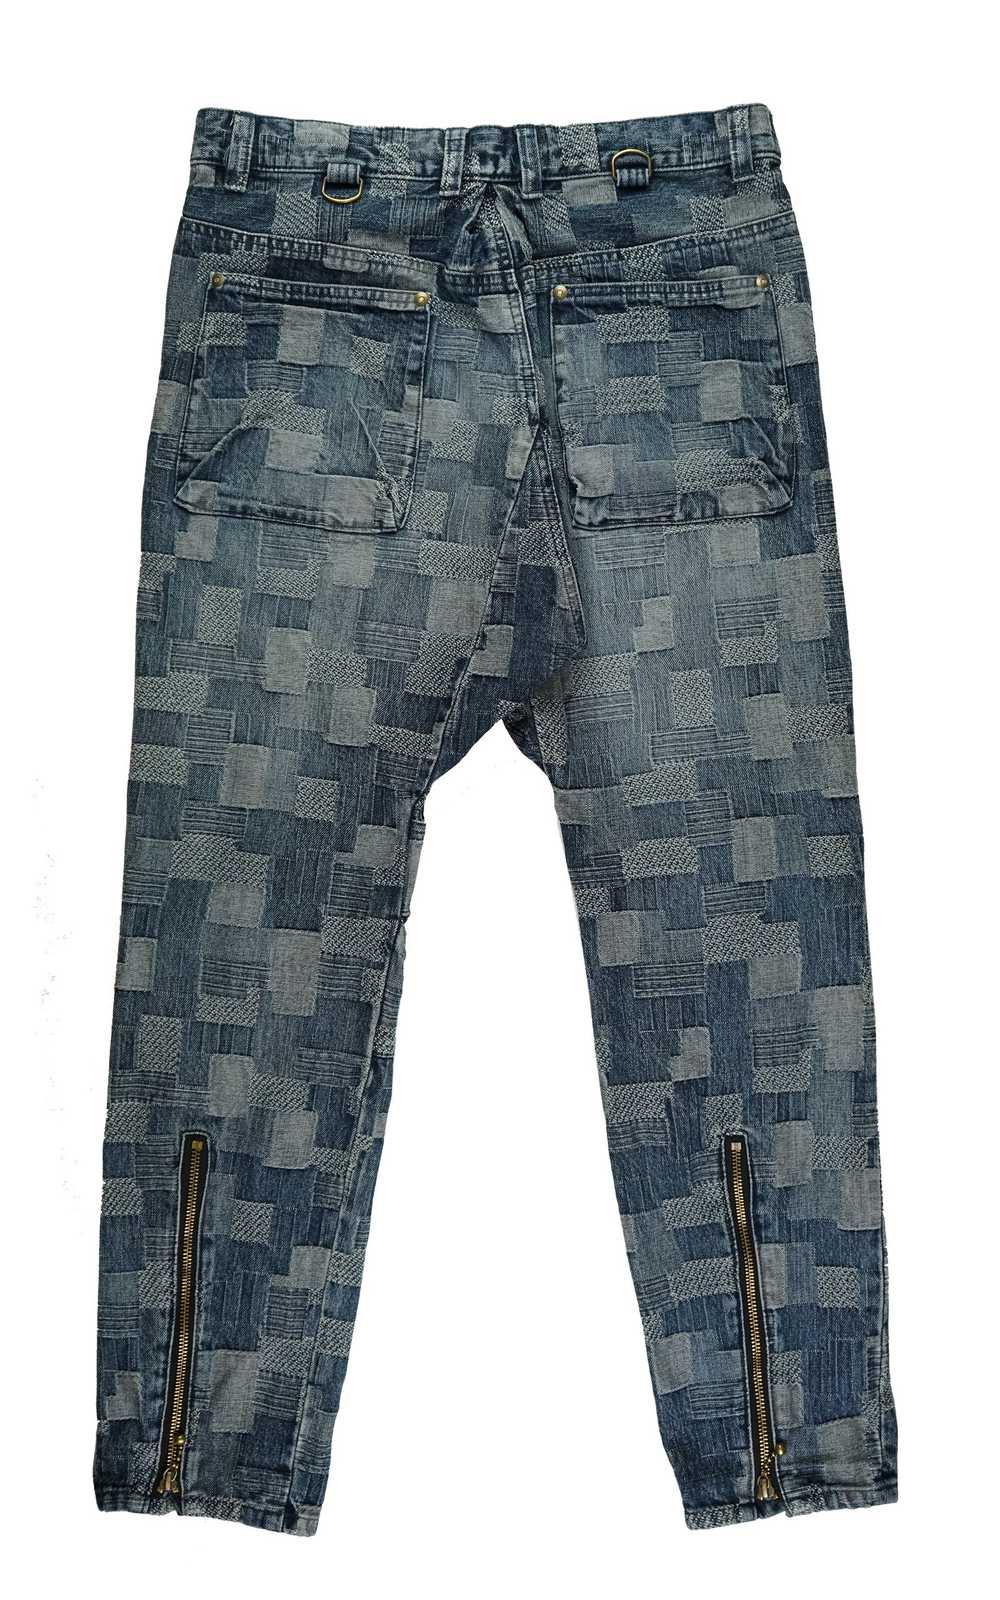 Blackmeans Boro Patchwork Jeans - image 2